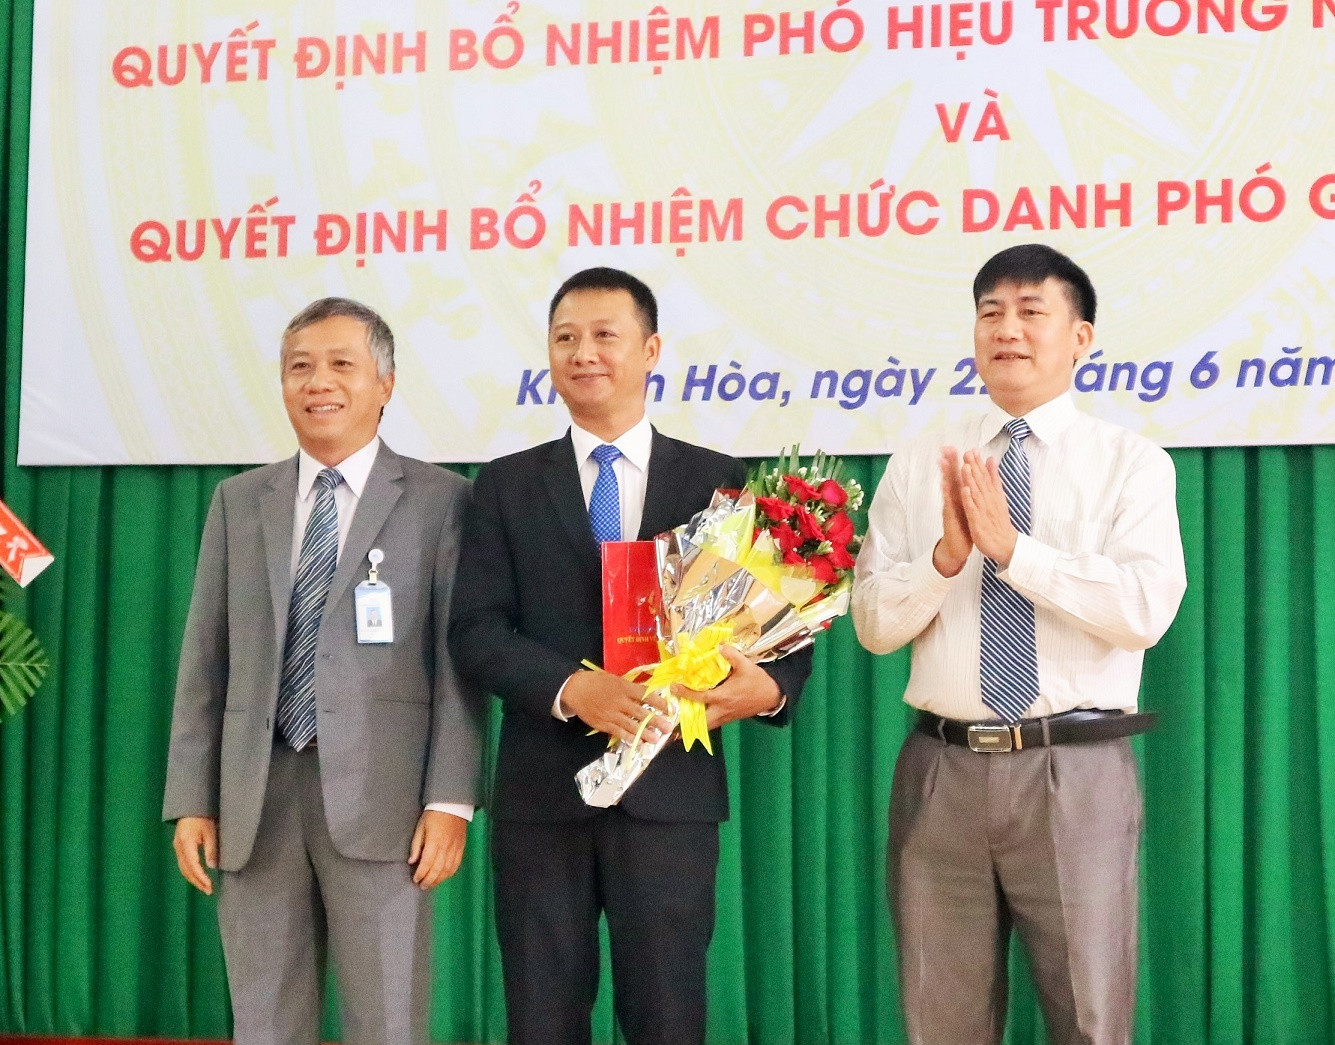 Tiến sĩ Trần Doãn Hùng nhận quyết định bổ nhiệm phó hiệu trưởng. 